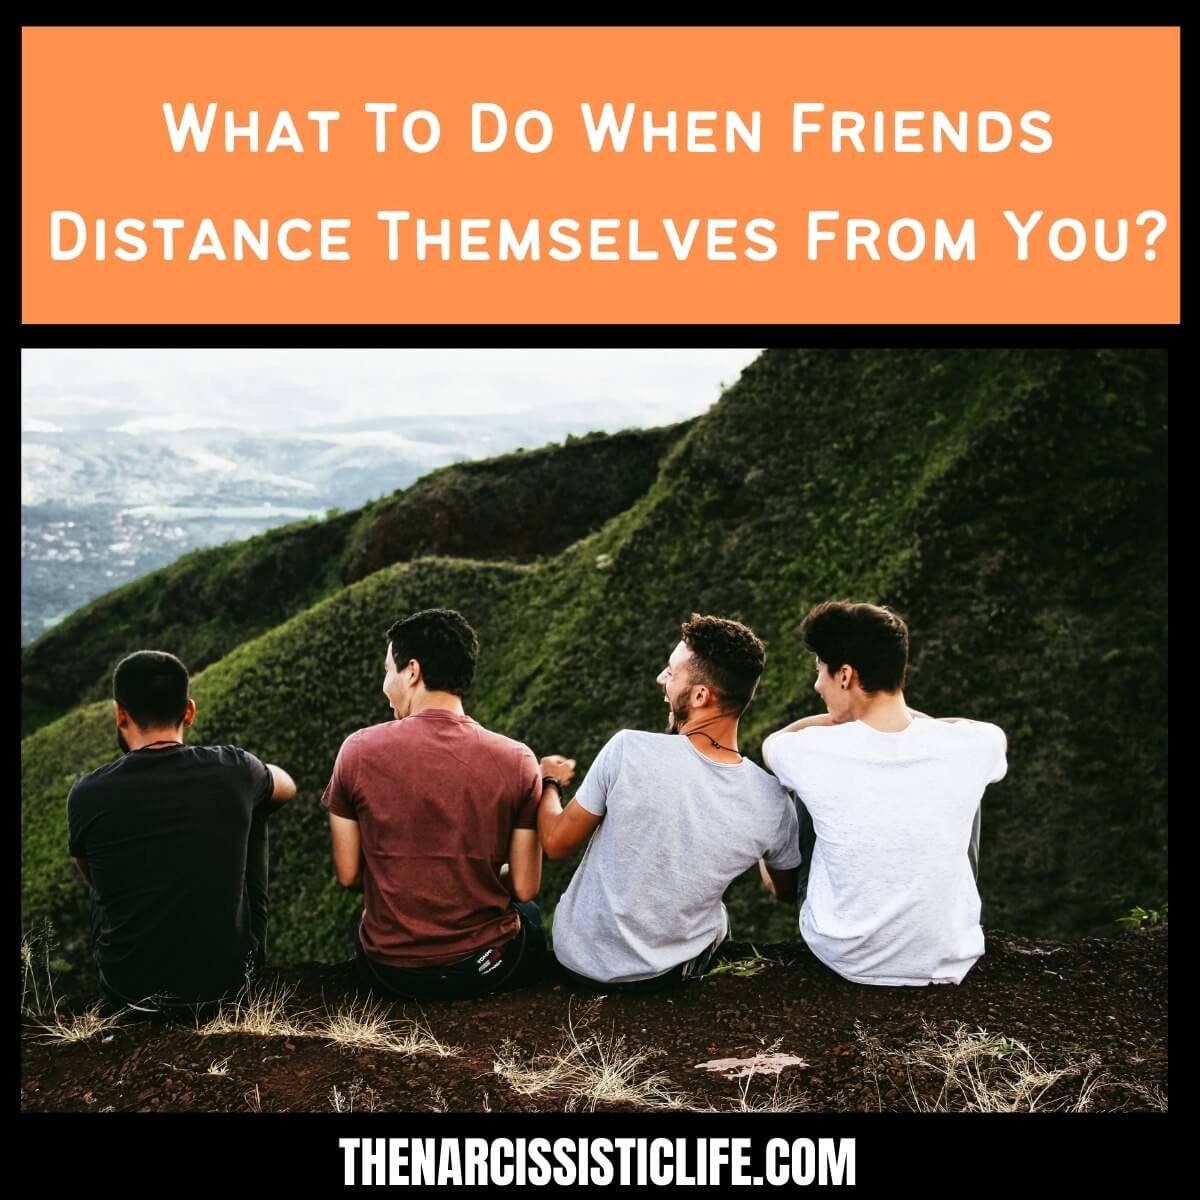 وقتی دوستان از شما فاصله می گیرند چه باید کرد؟